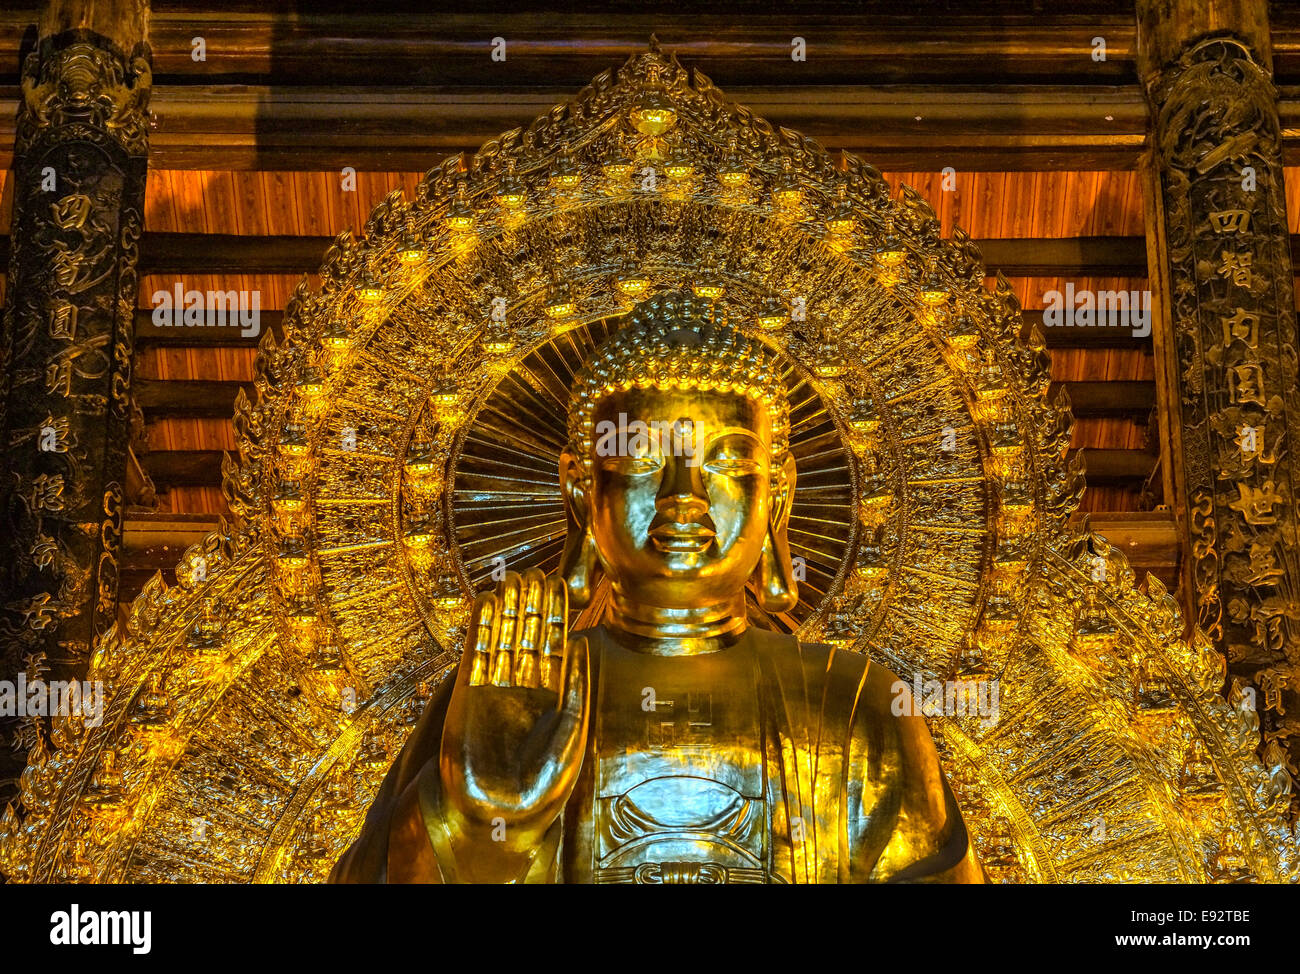 Büste und das Gesicht des Buddha umrahmt von Krone der Pfau Rute wie der Hintergrund. Stockfoto